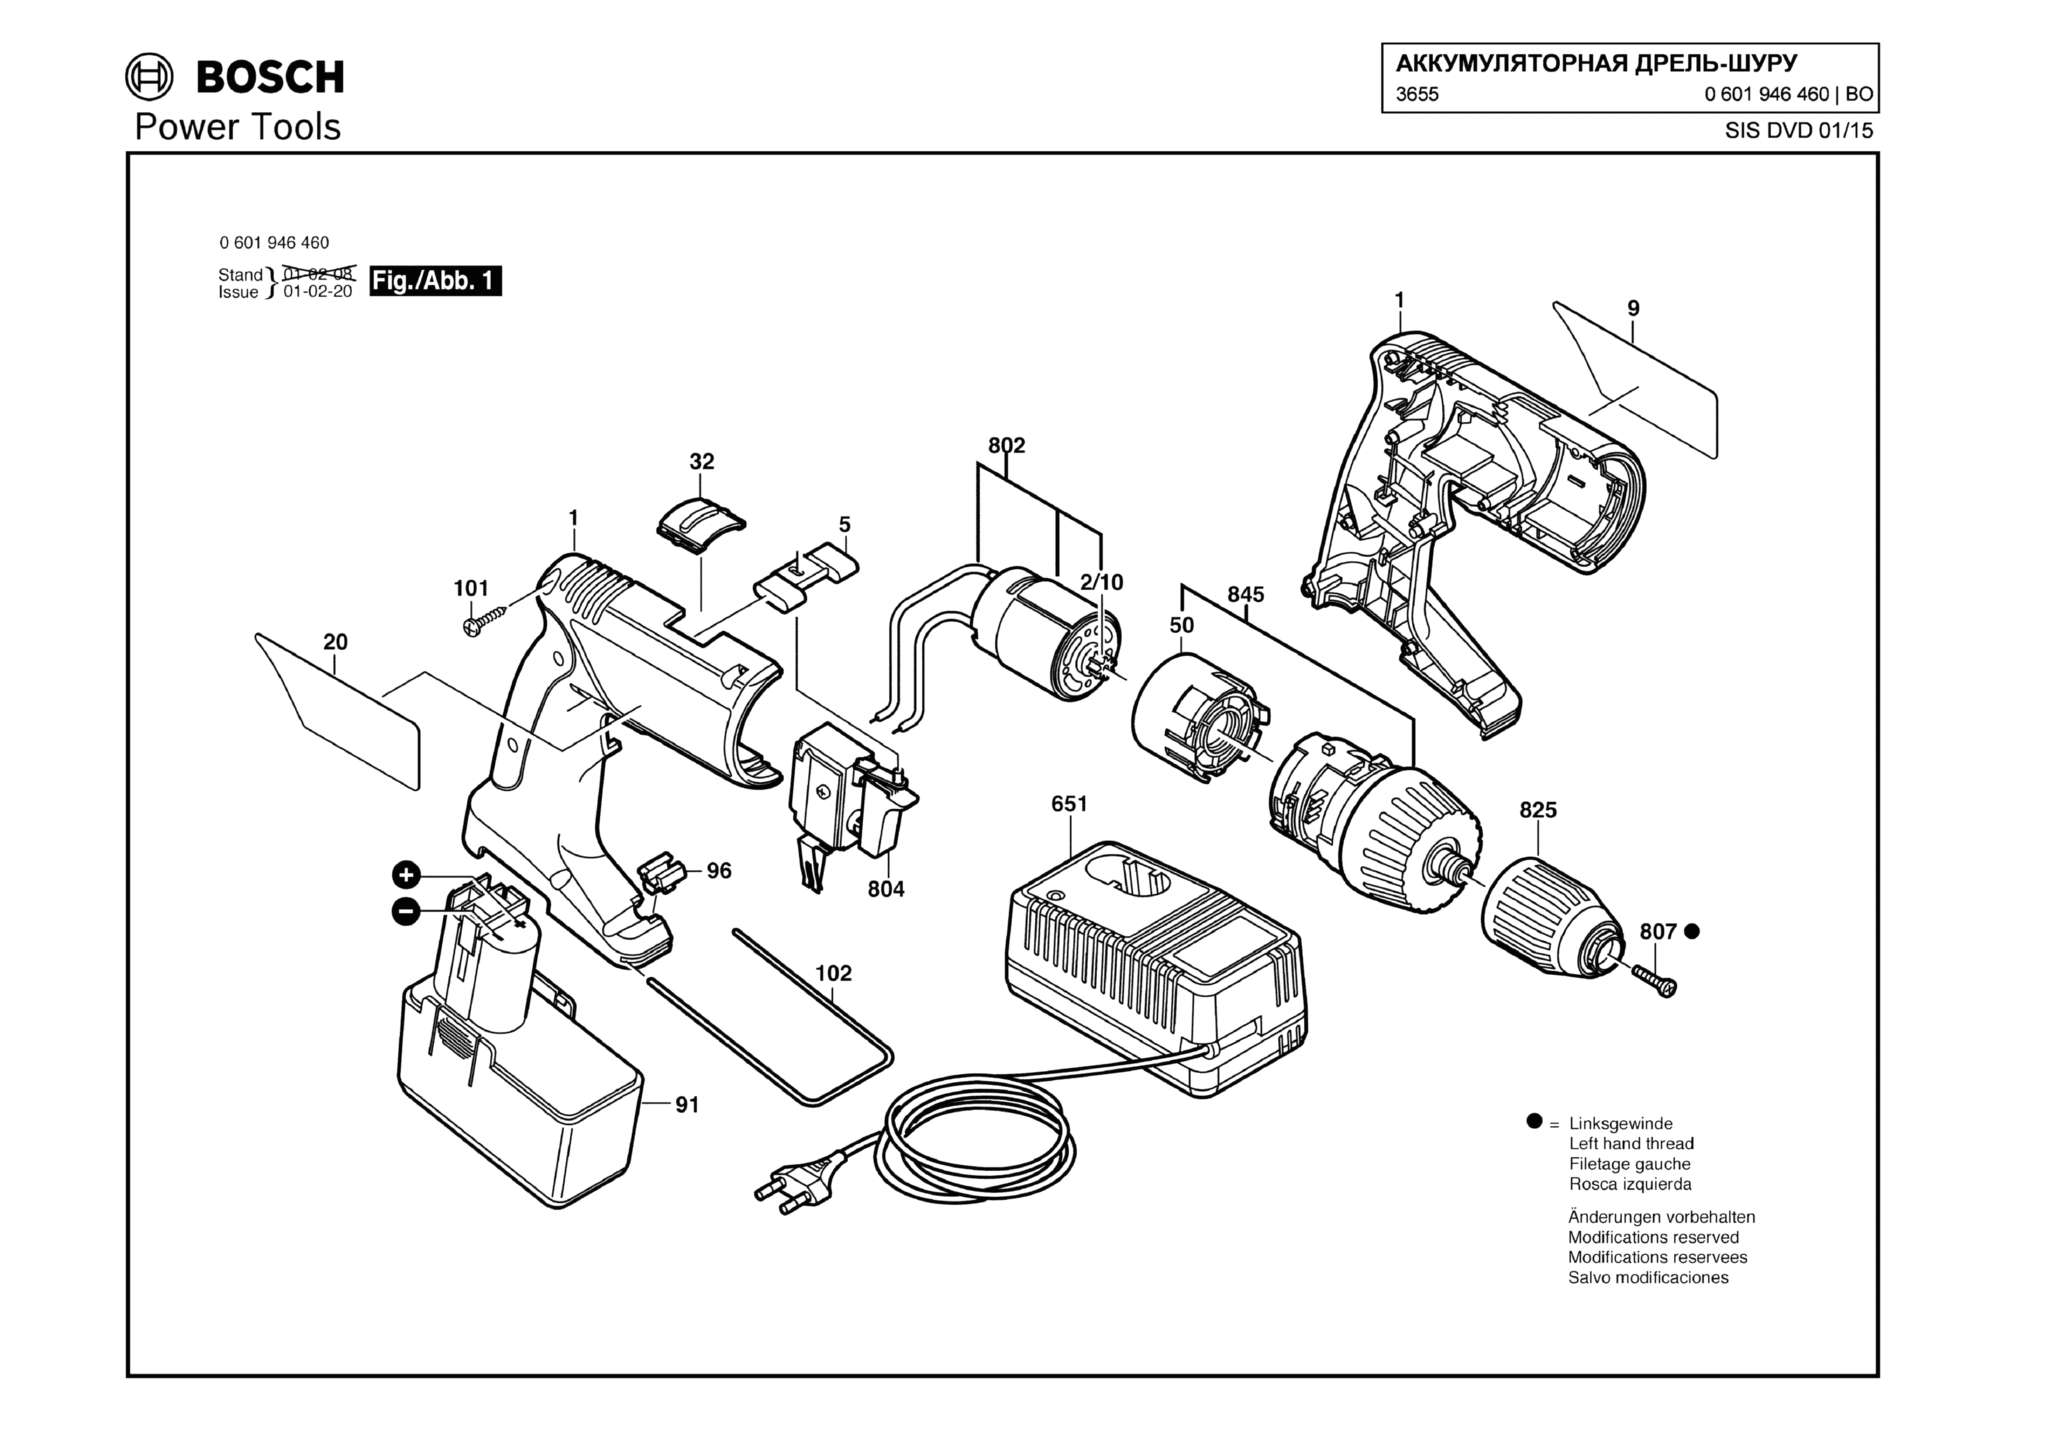 Запчасти, схема и деталировка Bosch 3655 (ТИП 0601946460)